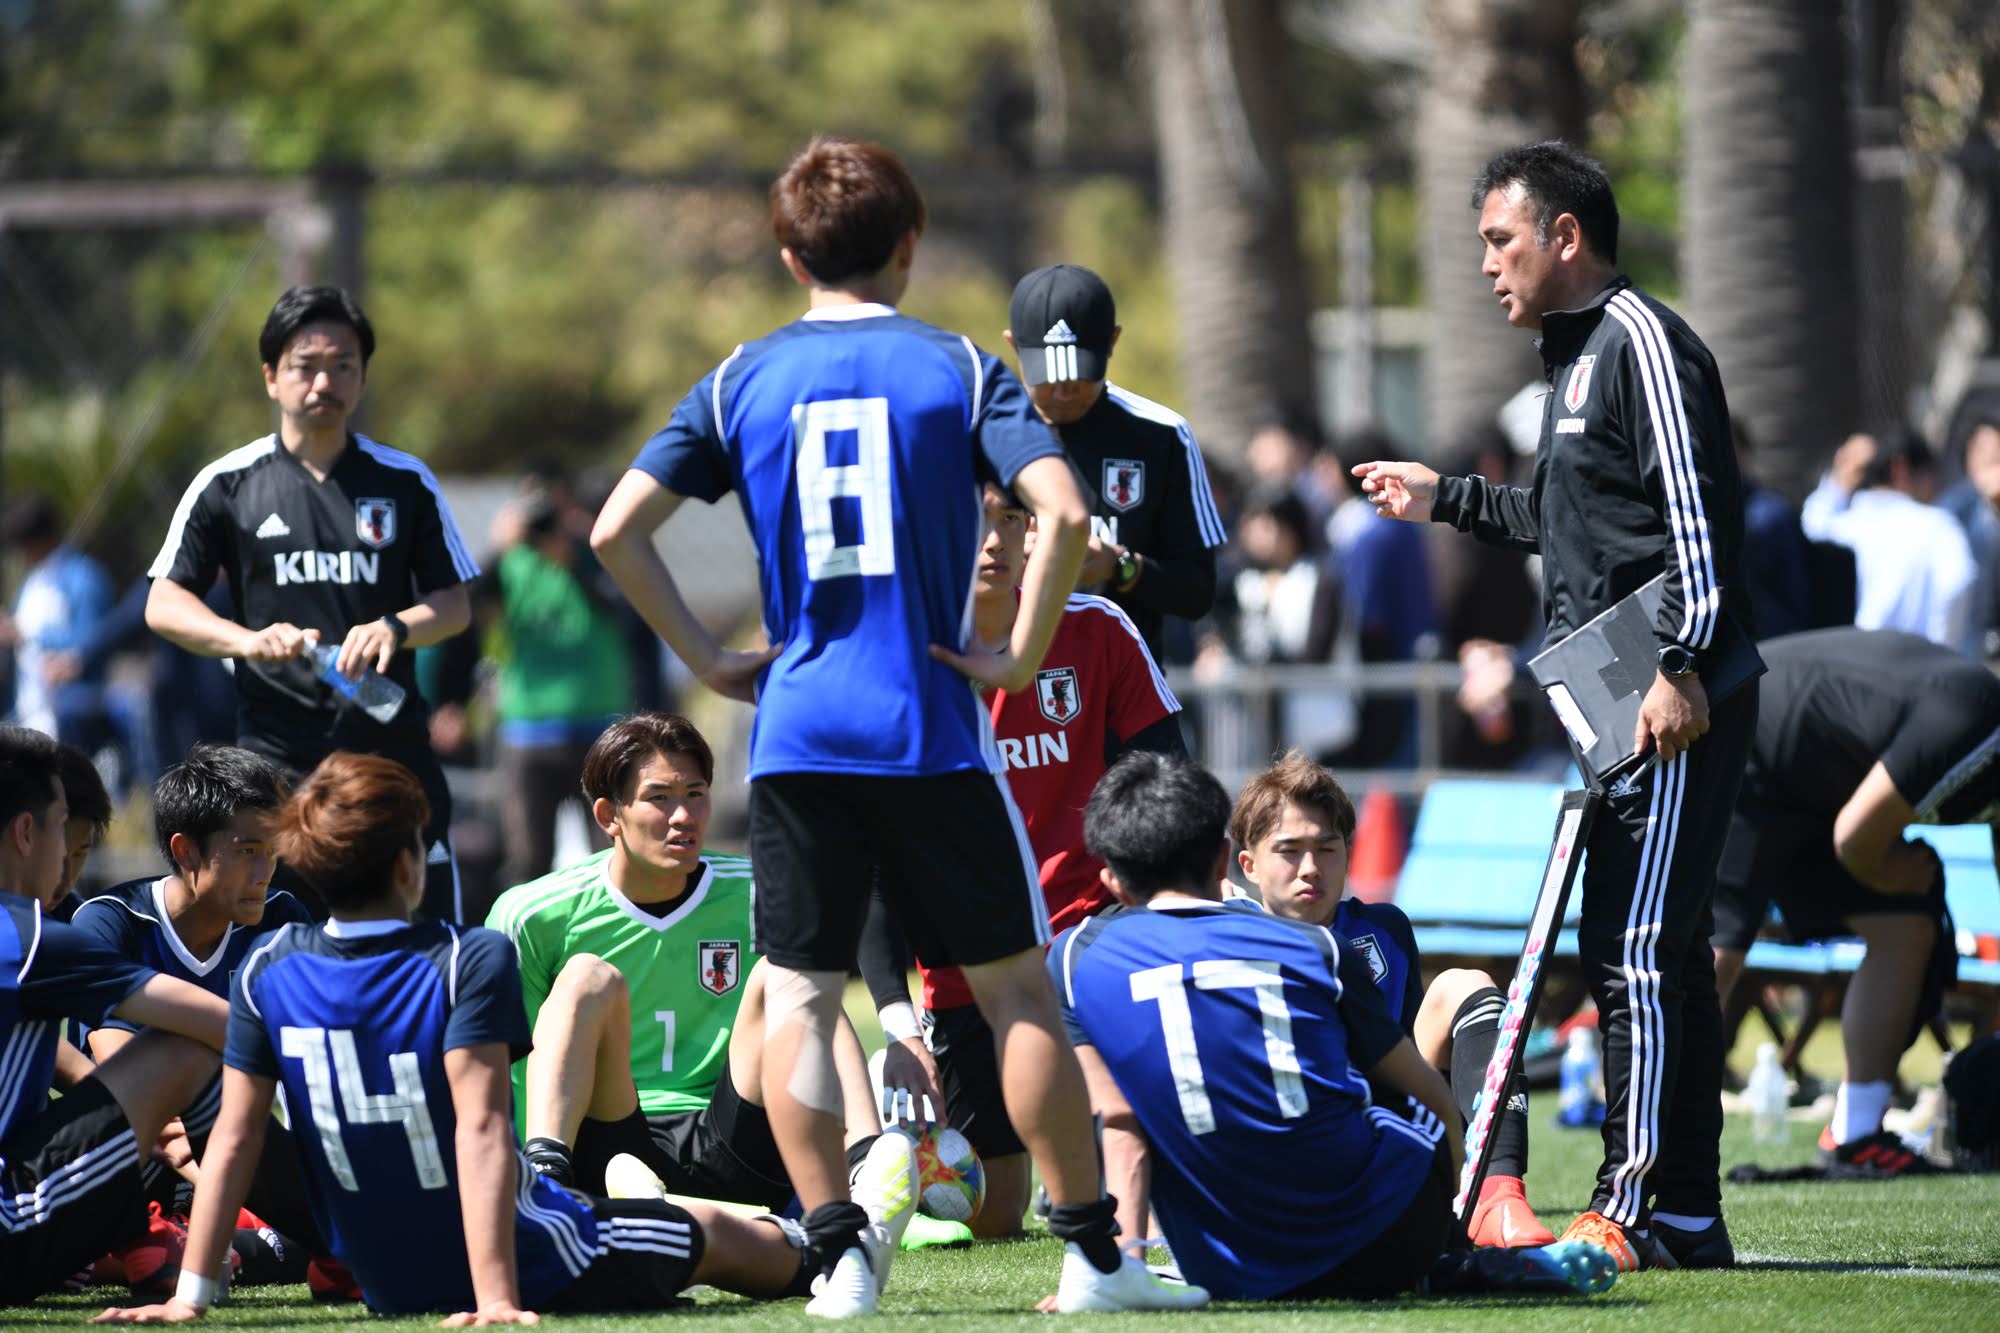 U 日本代表のトレーニングパートーナーにc大阪u 18の二人を派遣 サカノワ